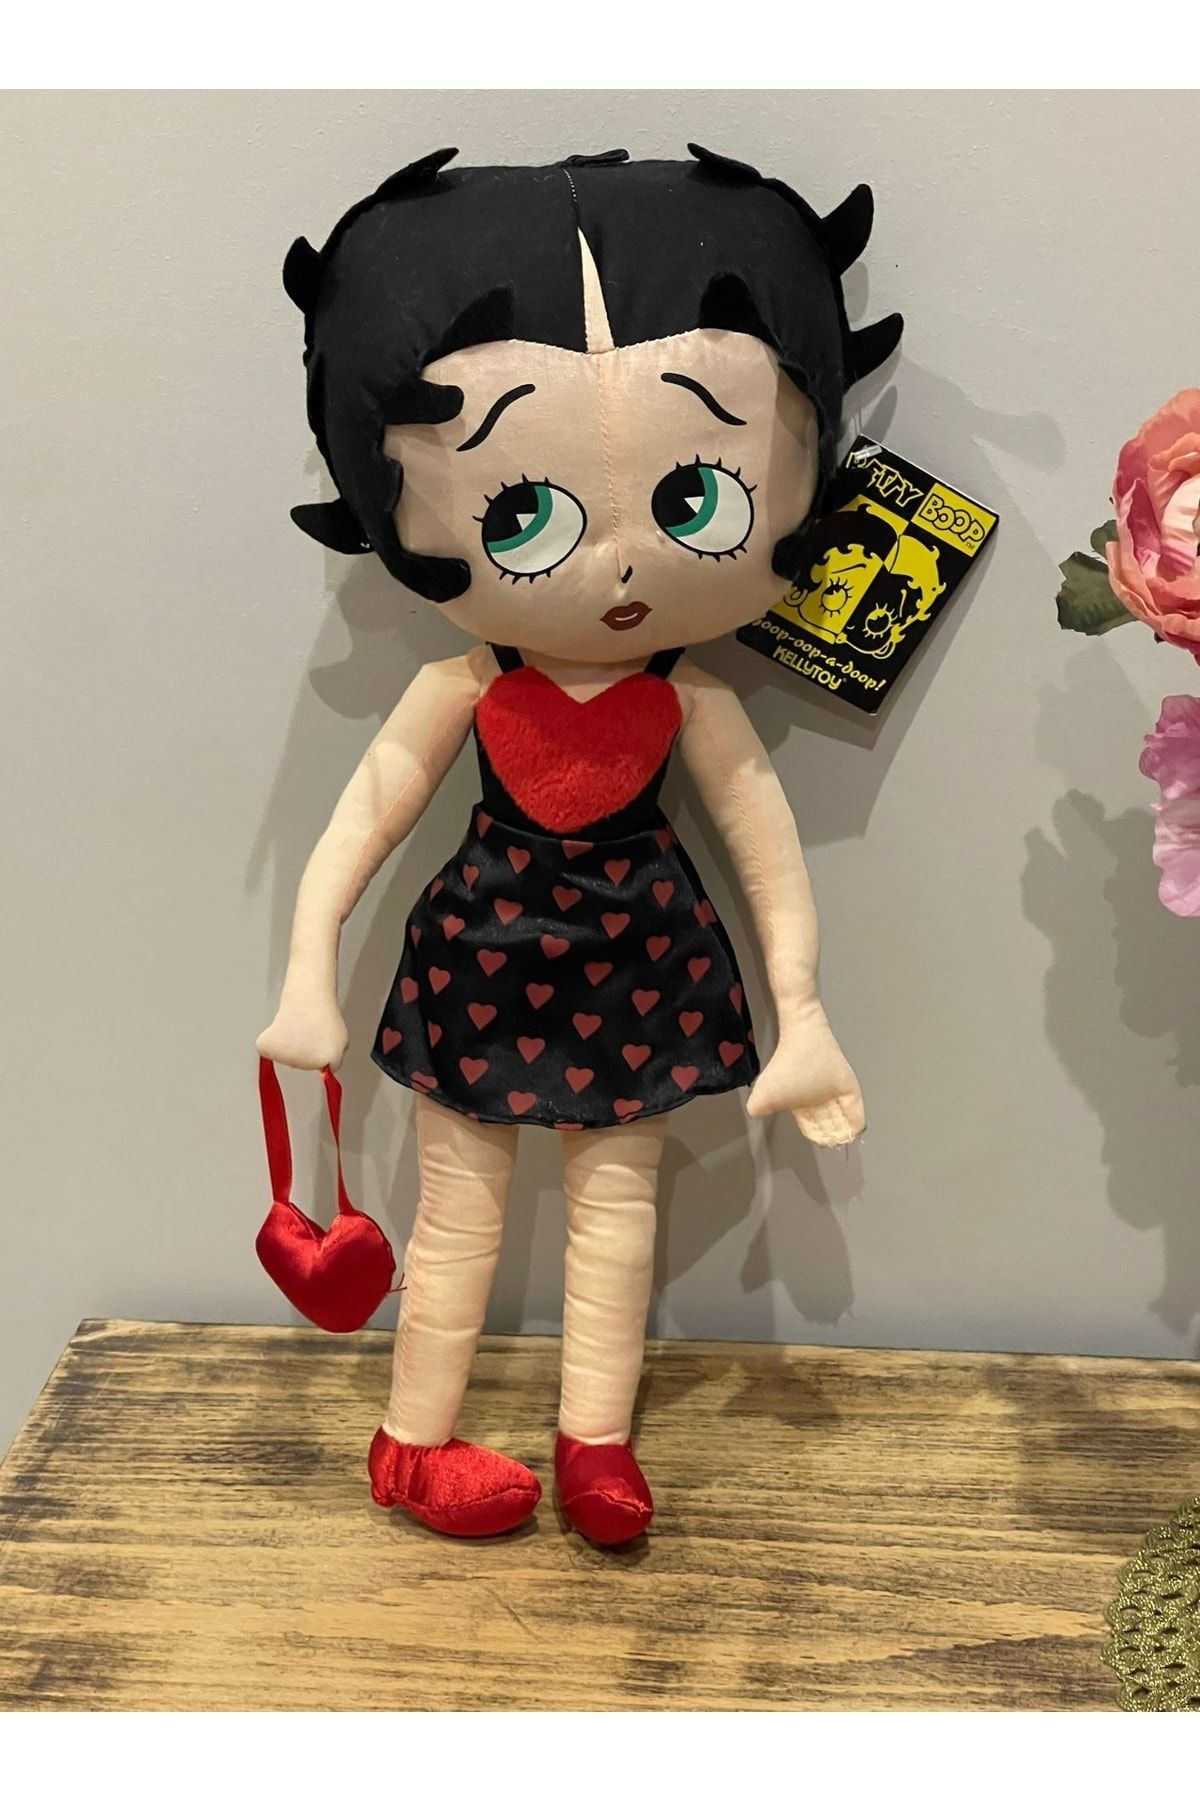 BENİMOLMALI Peluş Betty Boop Oyuncak, Peluş Oyuncak Betty Boop, 38cm, Kalp Giyimli